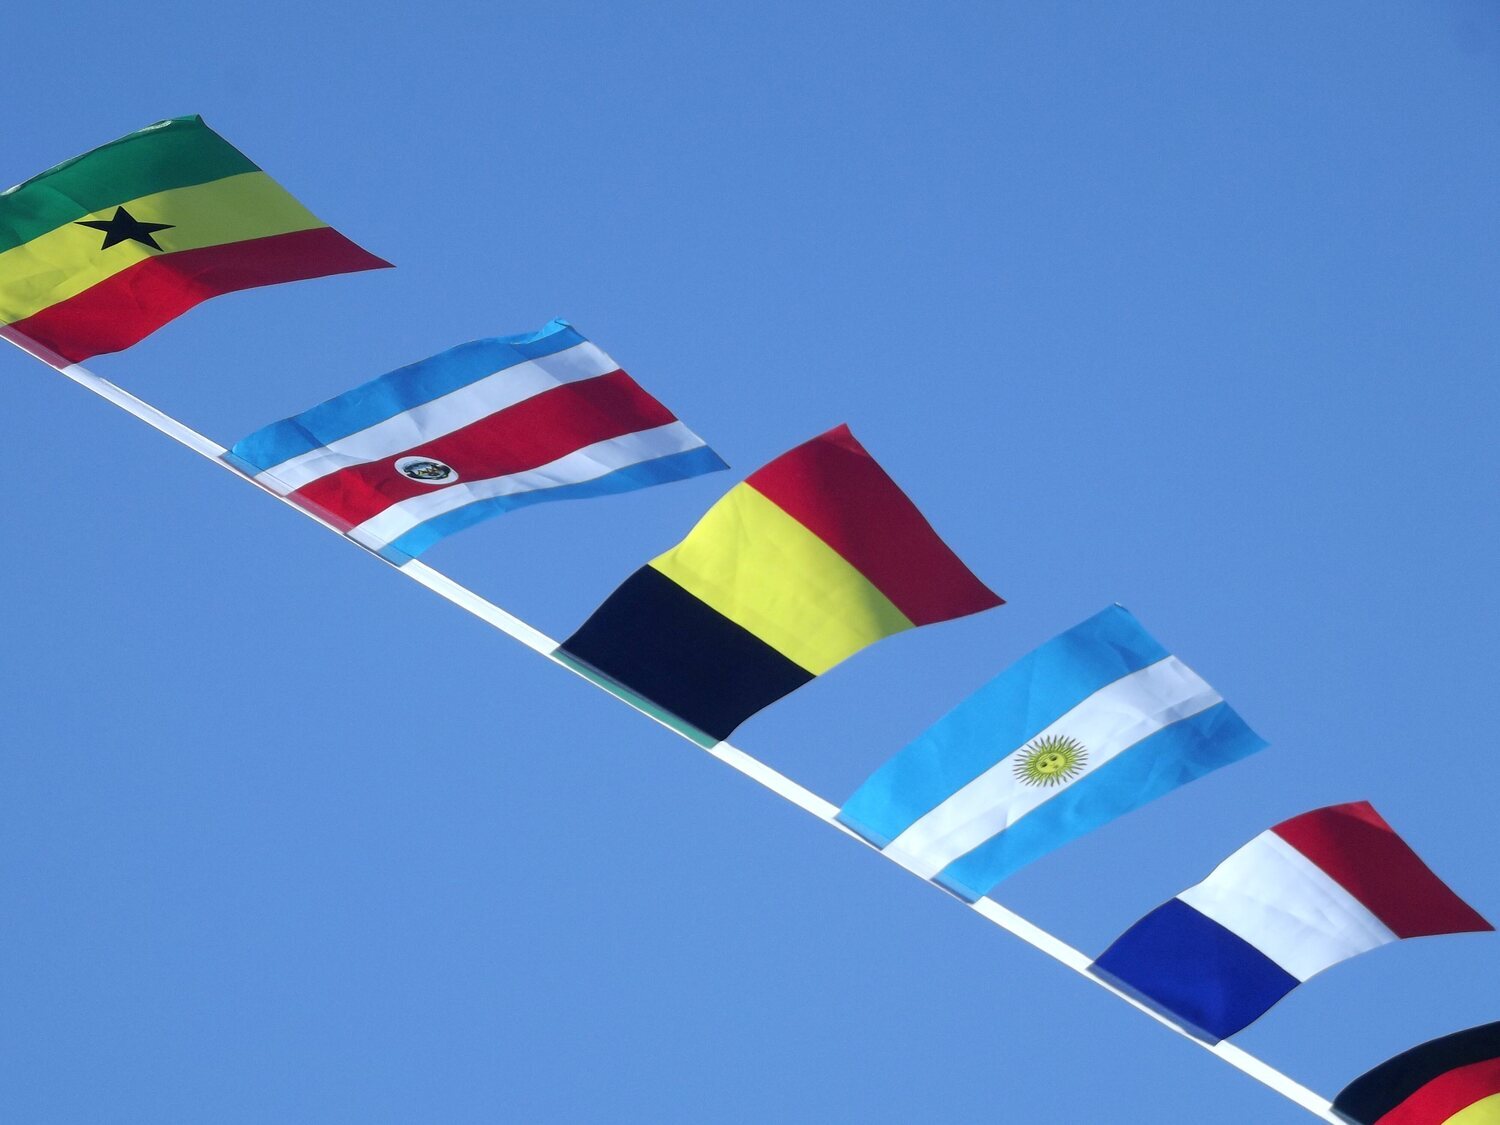 ¿Cuál es el color que está ausente en (casi) todas las banderas del mundo?